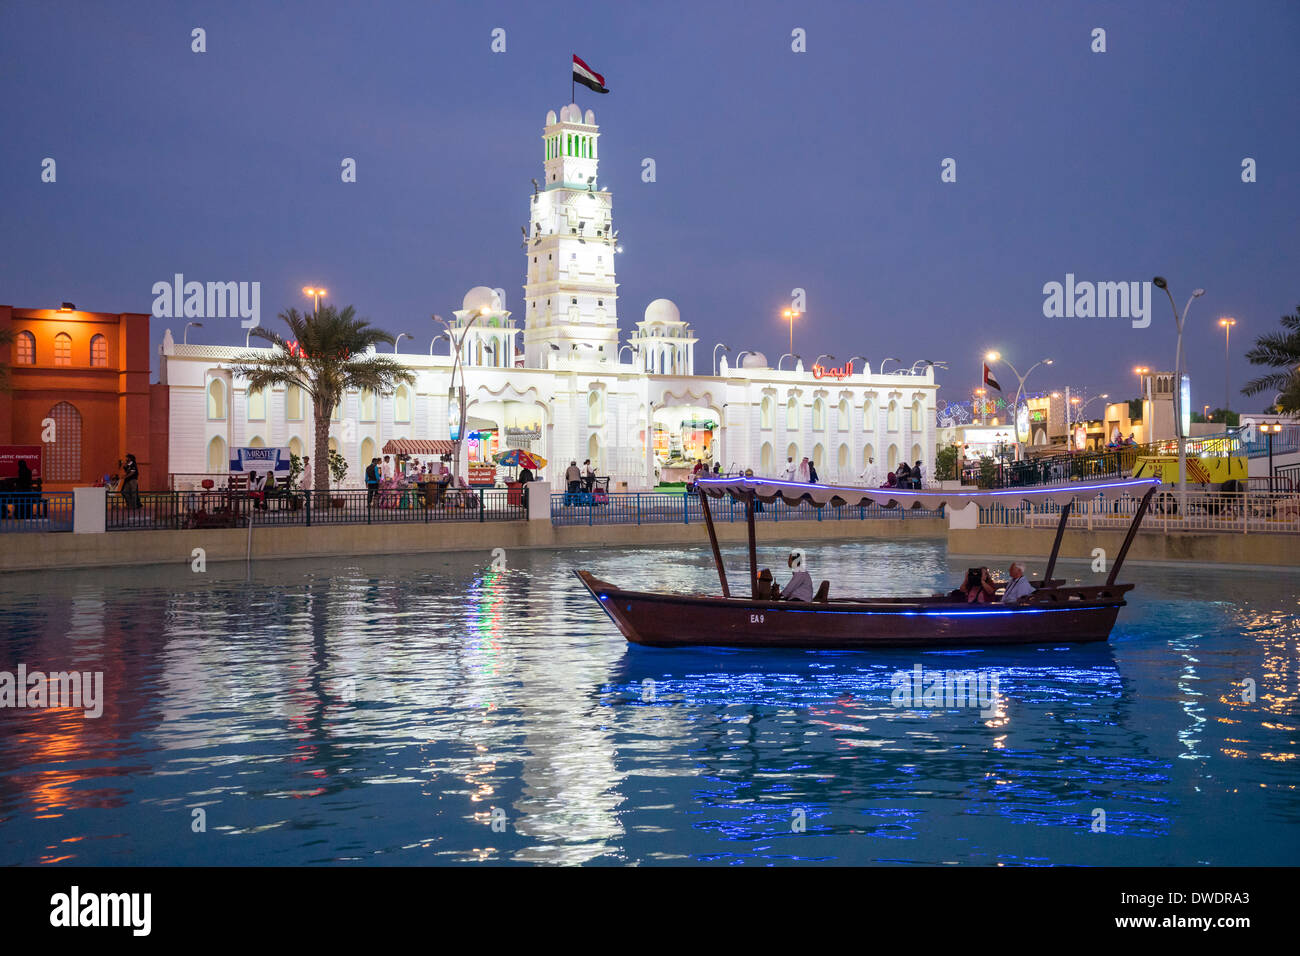 Yémen Pavilion et canal avec abra water taxi au Village Global tourist attraction culturelle au Dubaï Émirats Arabes Unis Banque D'Images